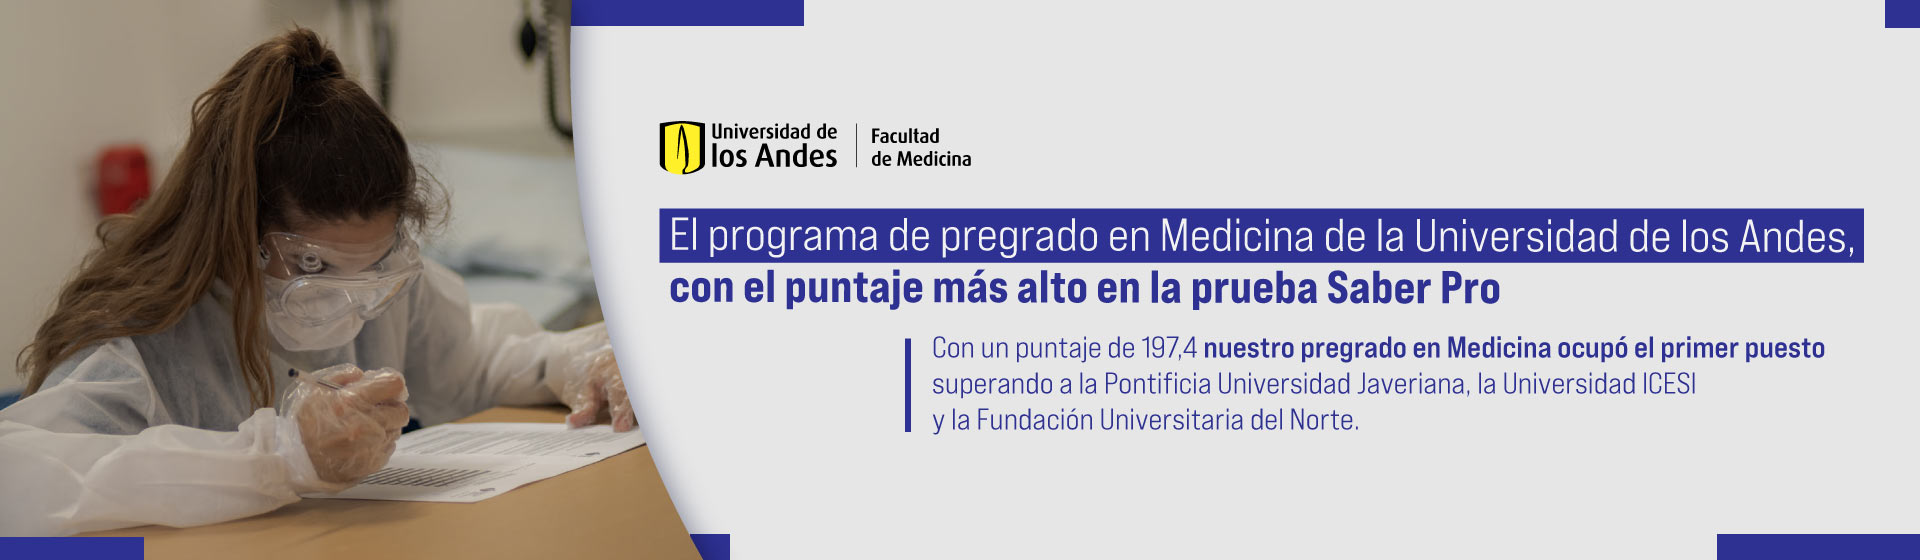 El programa de pregrado en Medicina de la Universidad de los Andes, con el puntaje más alto en la prueba Saber Pro